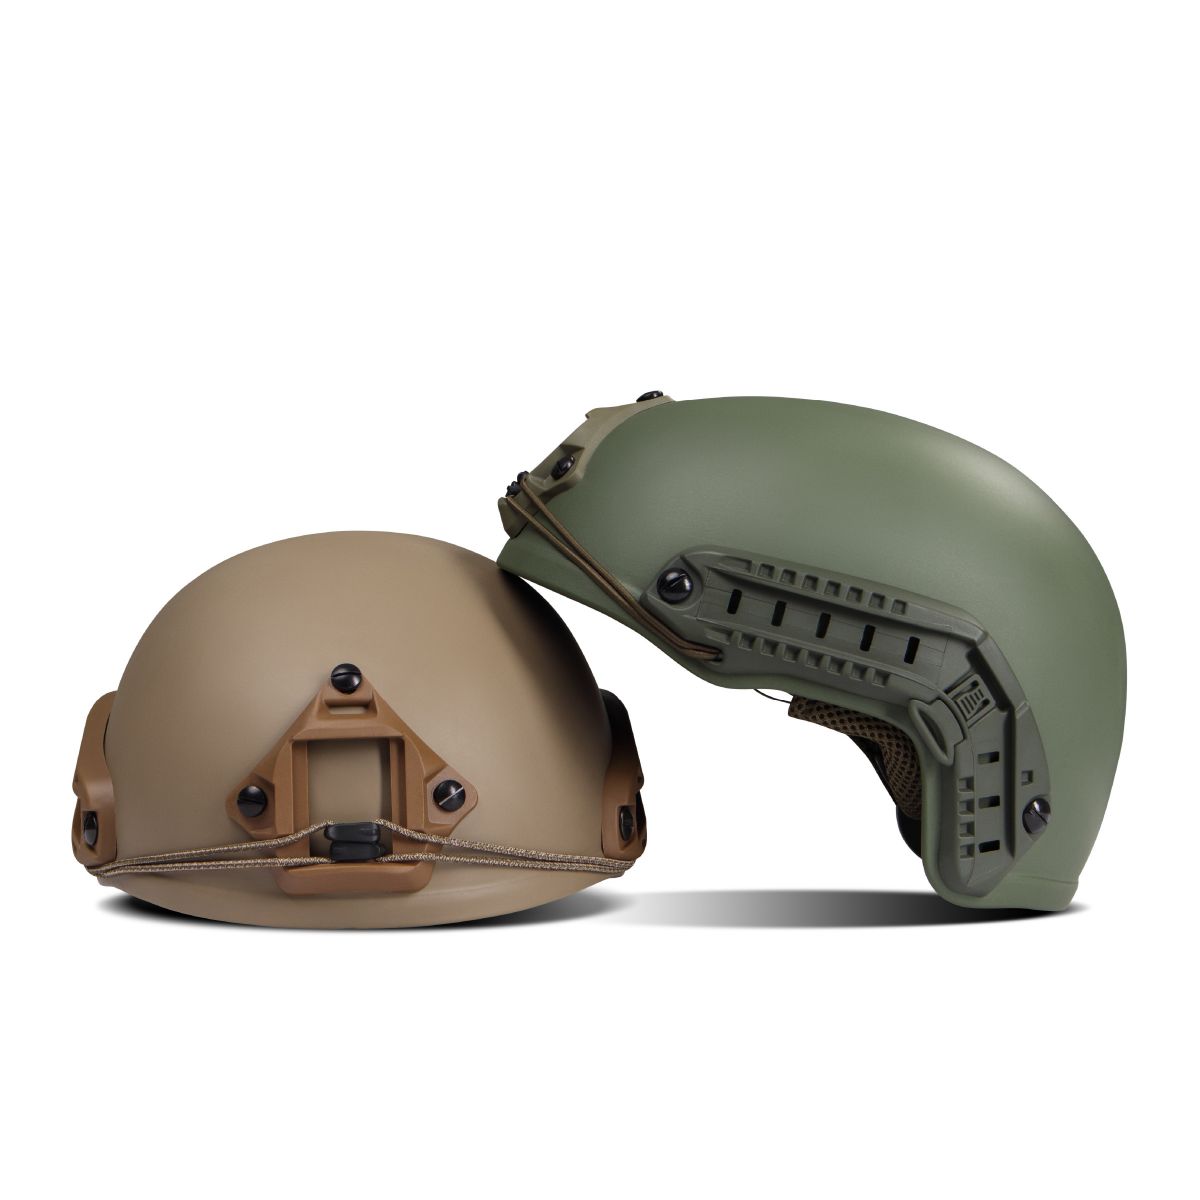 Кевларовый шлем TOR-D (стандарт). Производитель: Украина. Цвет Олива. L 11